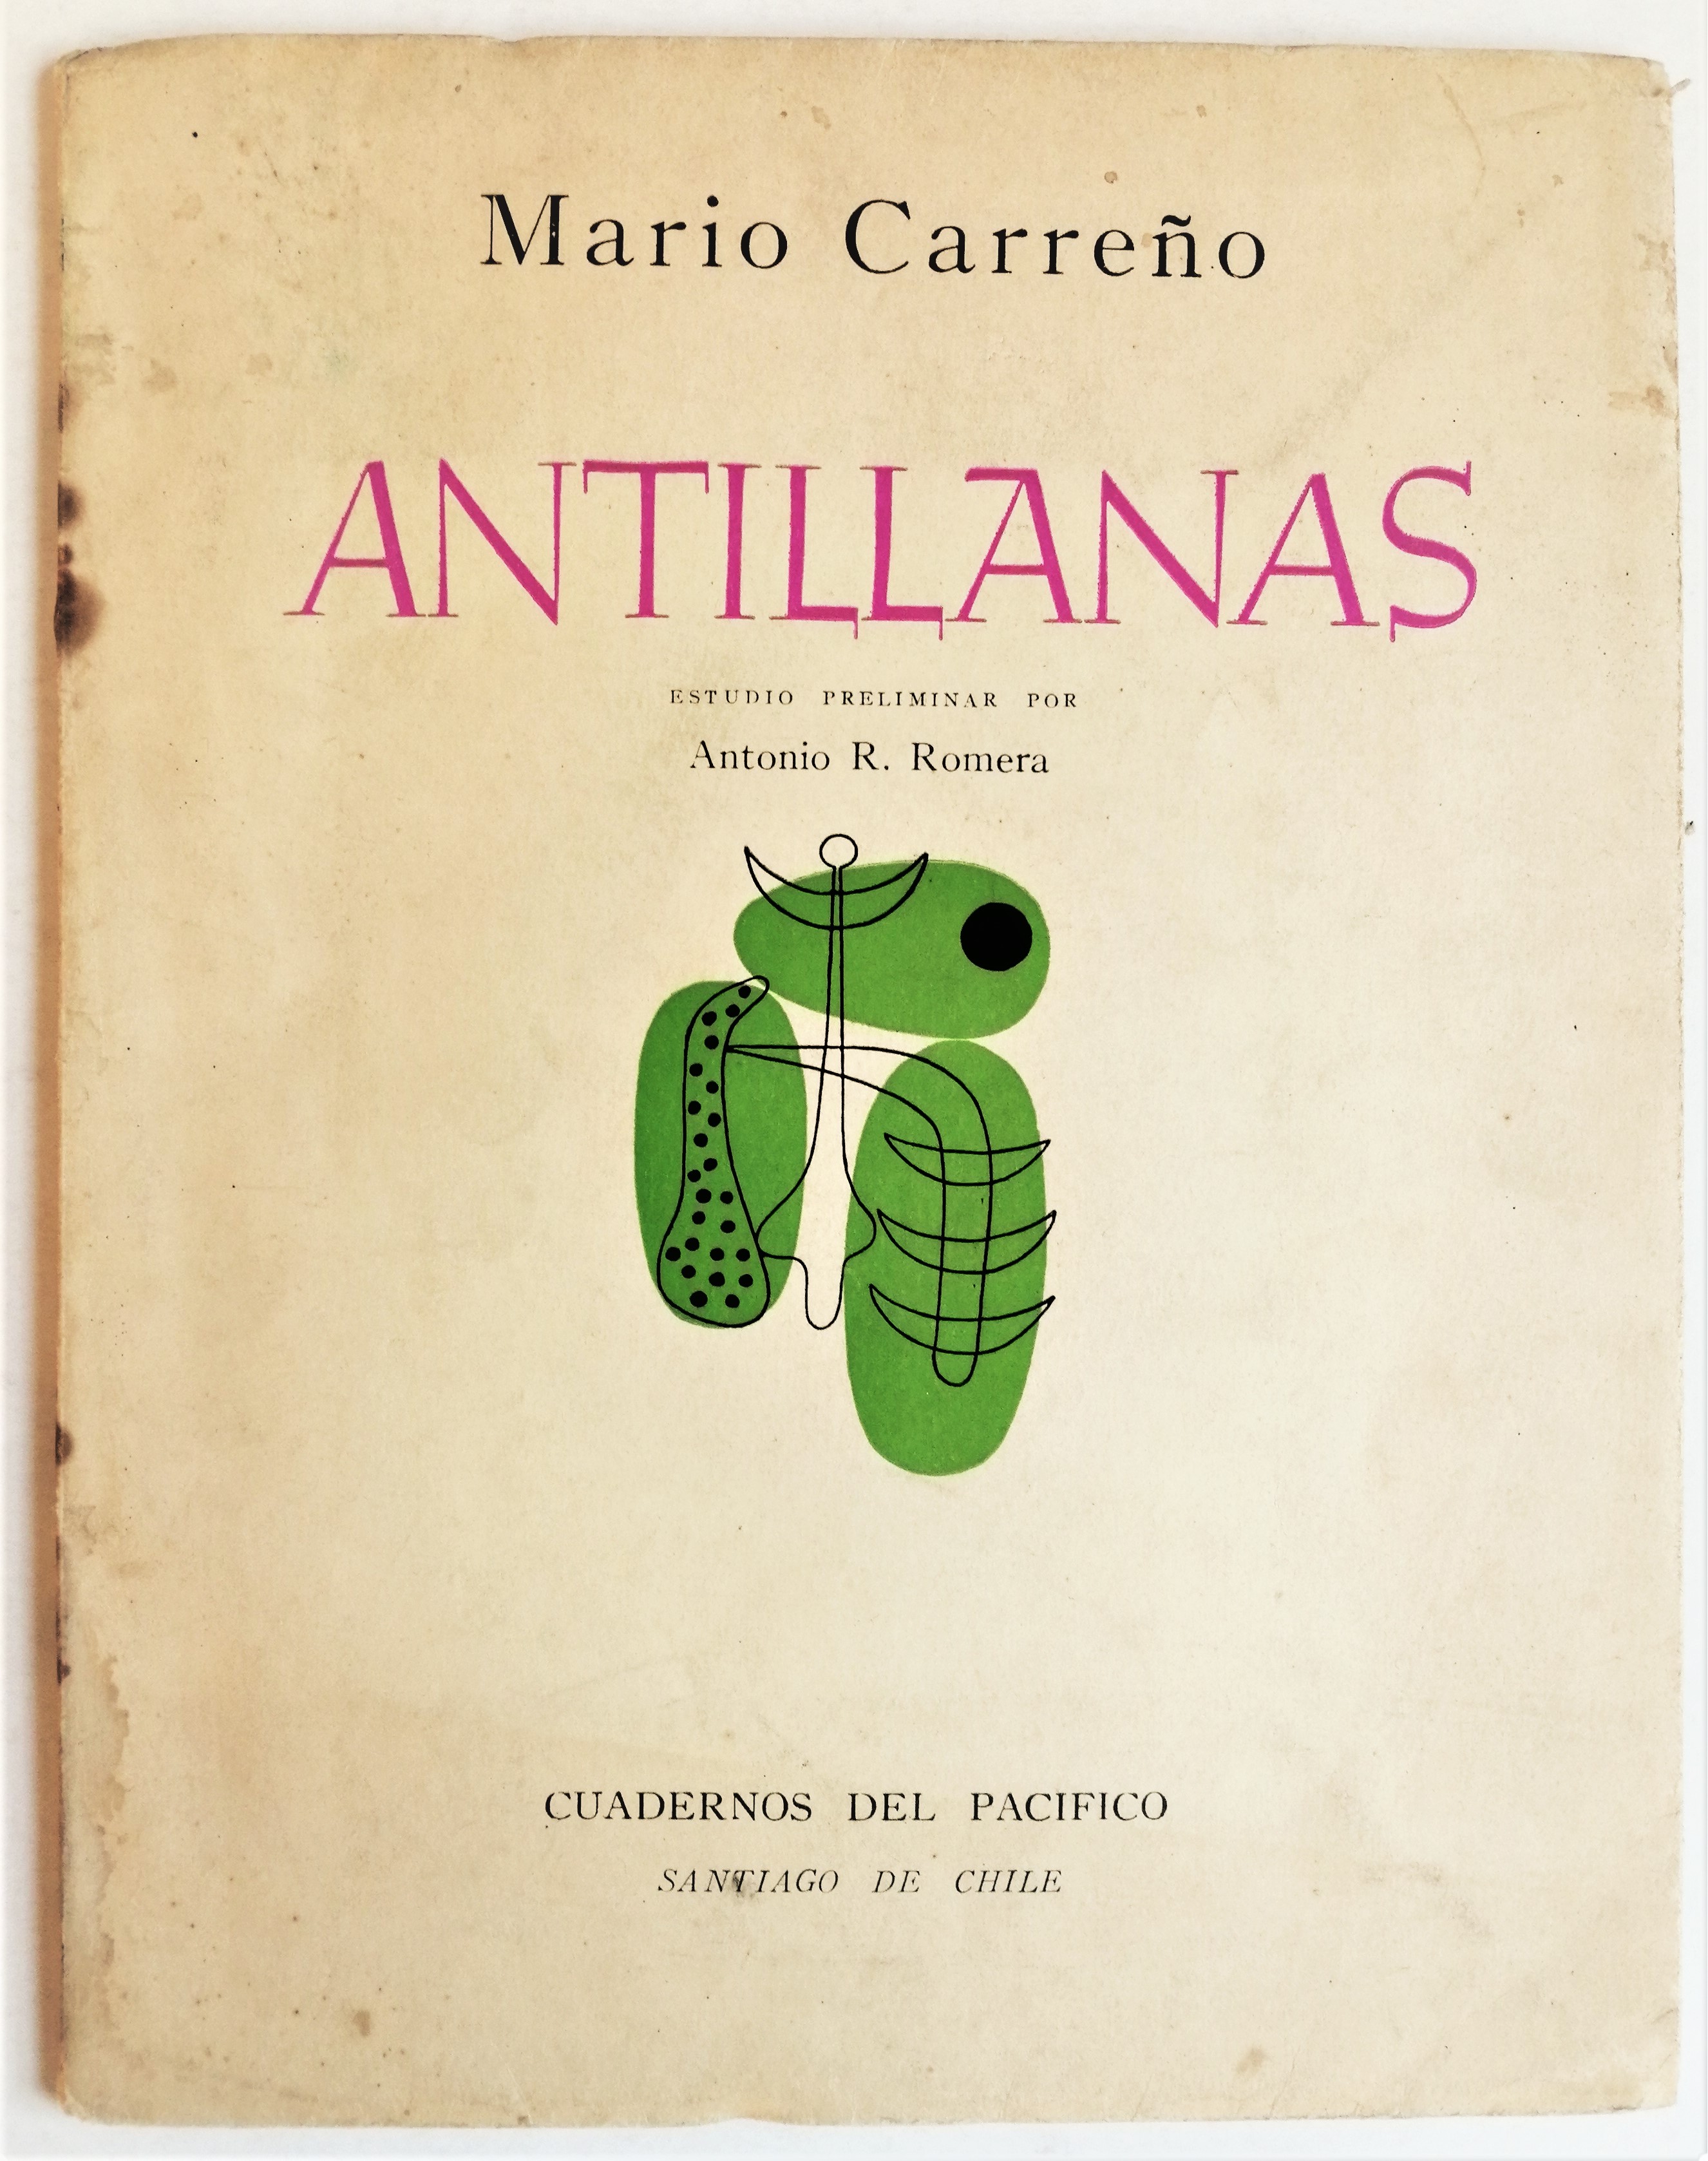 Mario Carreño - Antillanas